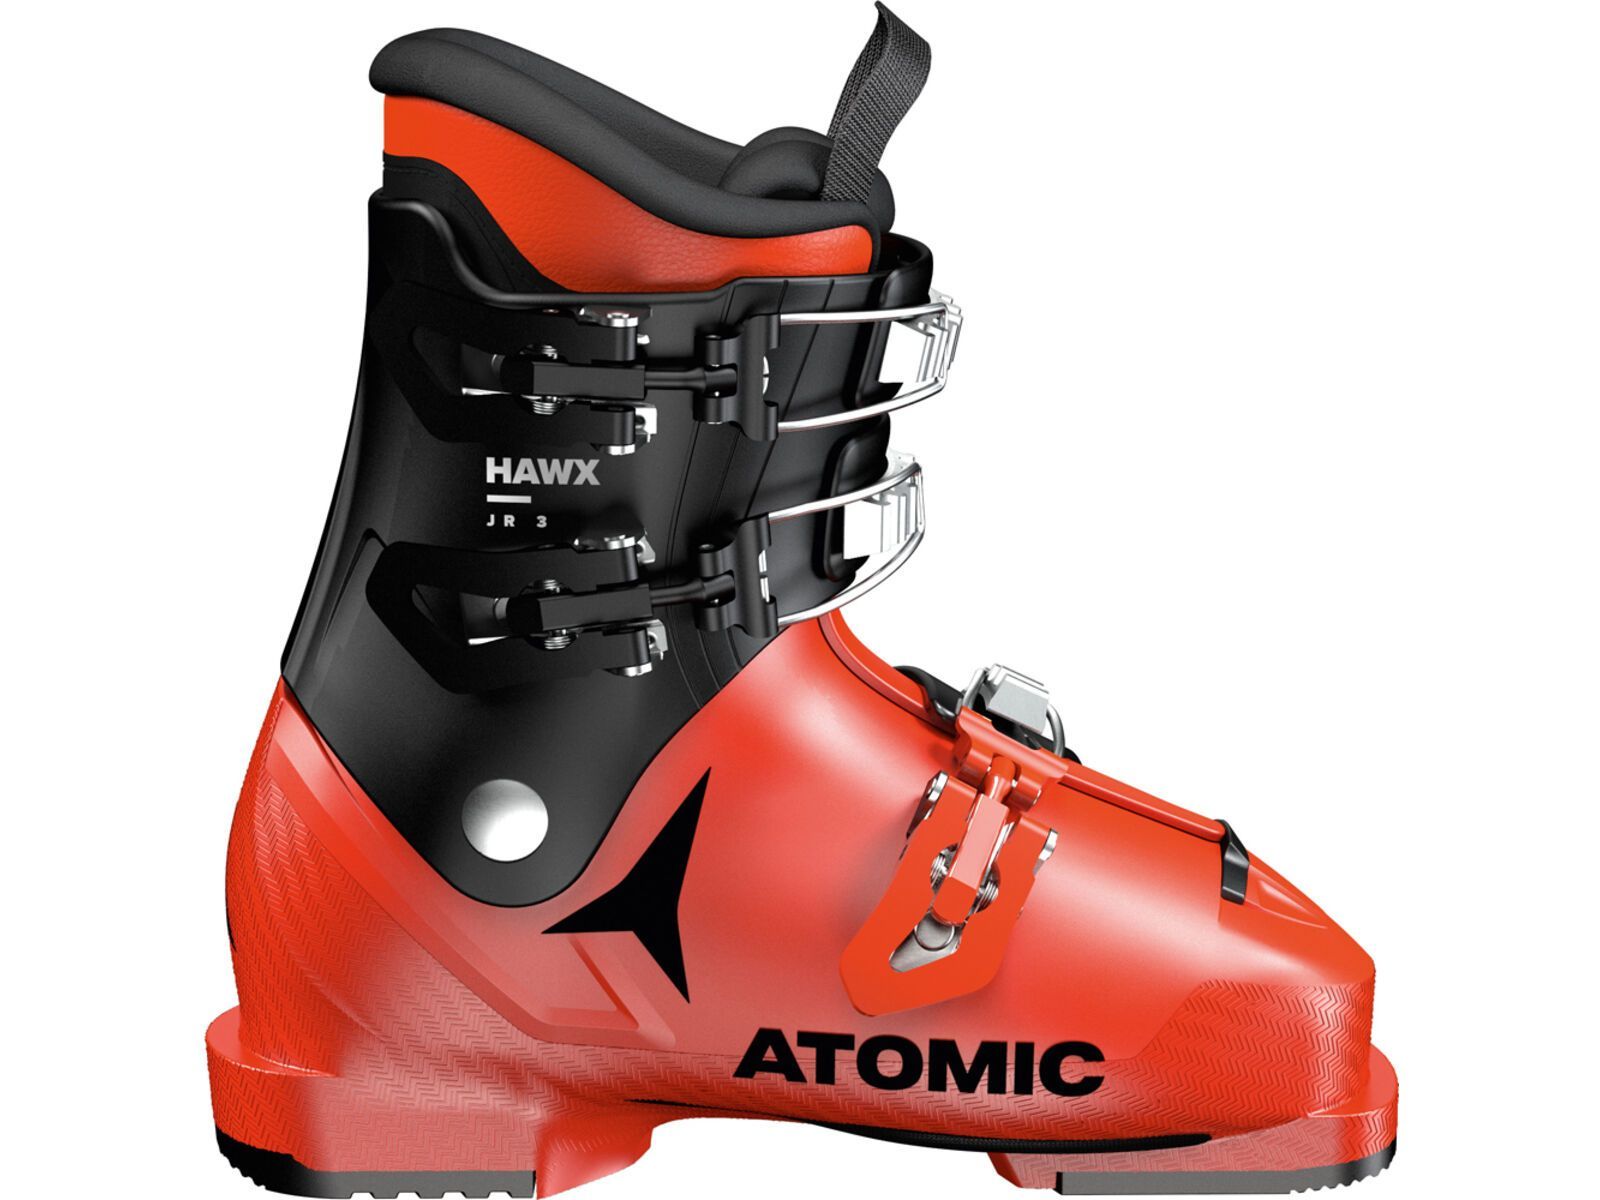 Atomic Hawx JR 3, red/black | Bild 1